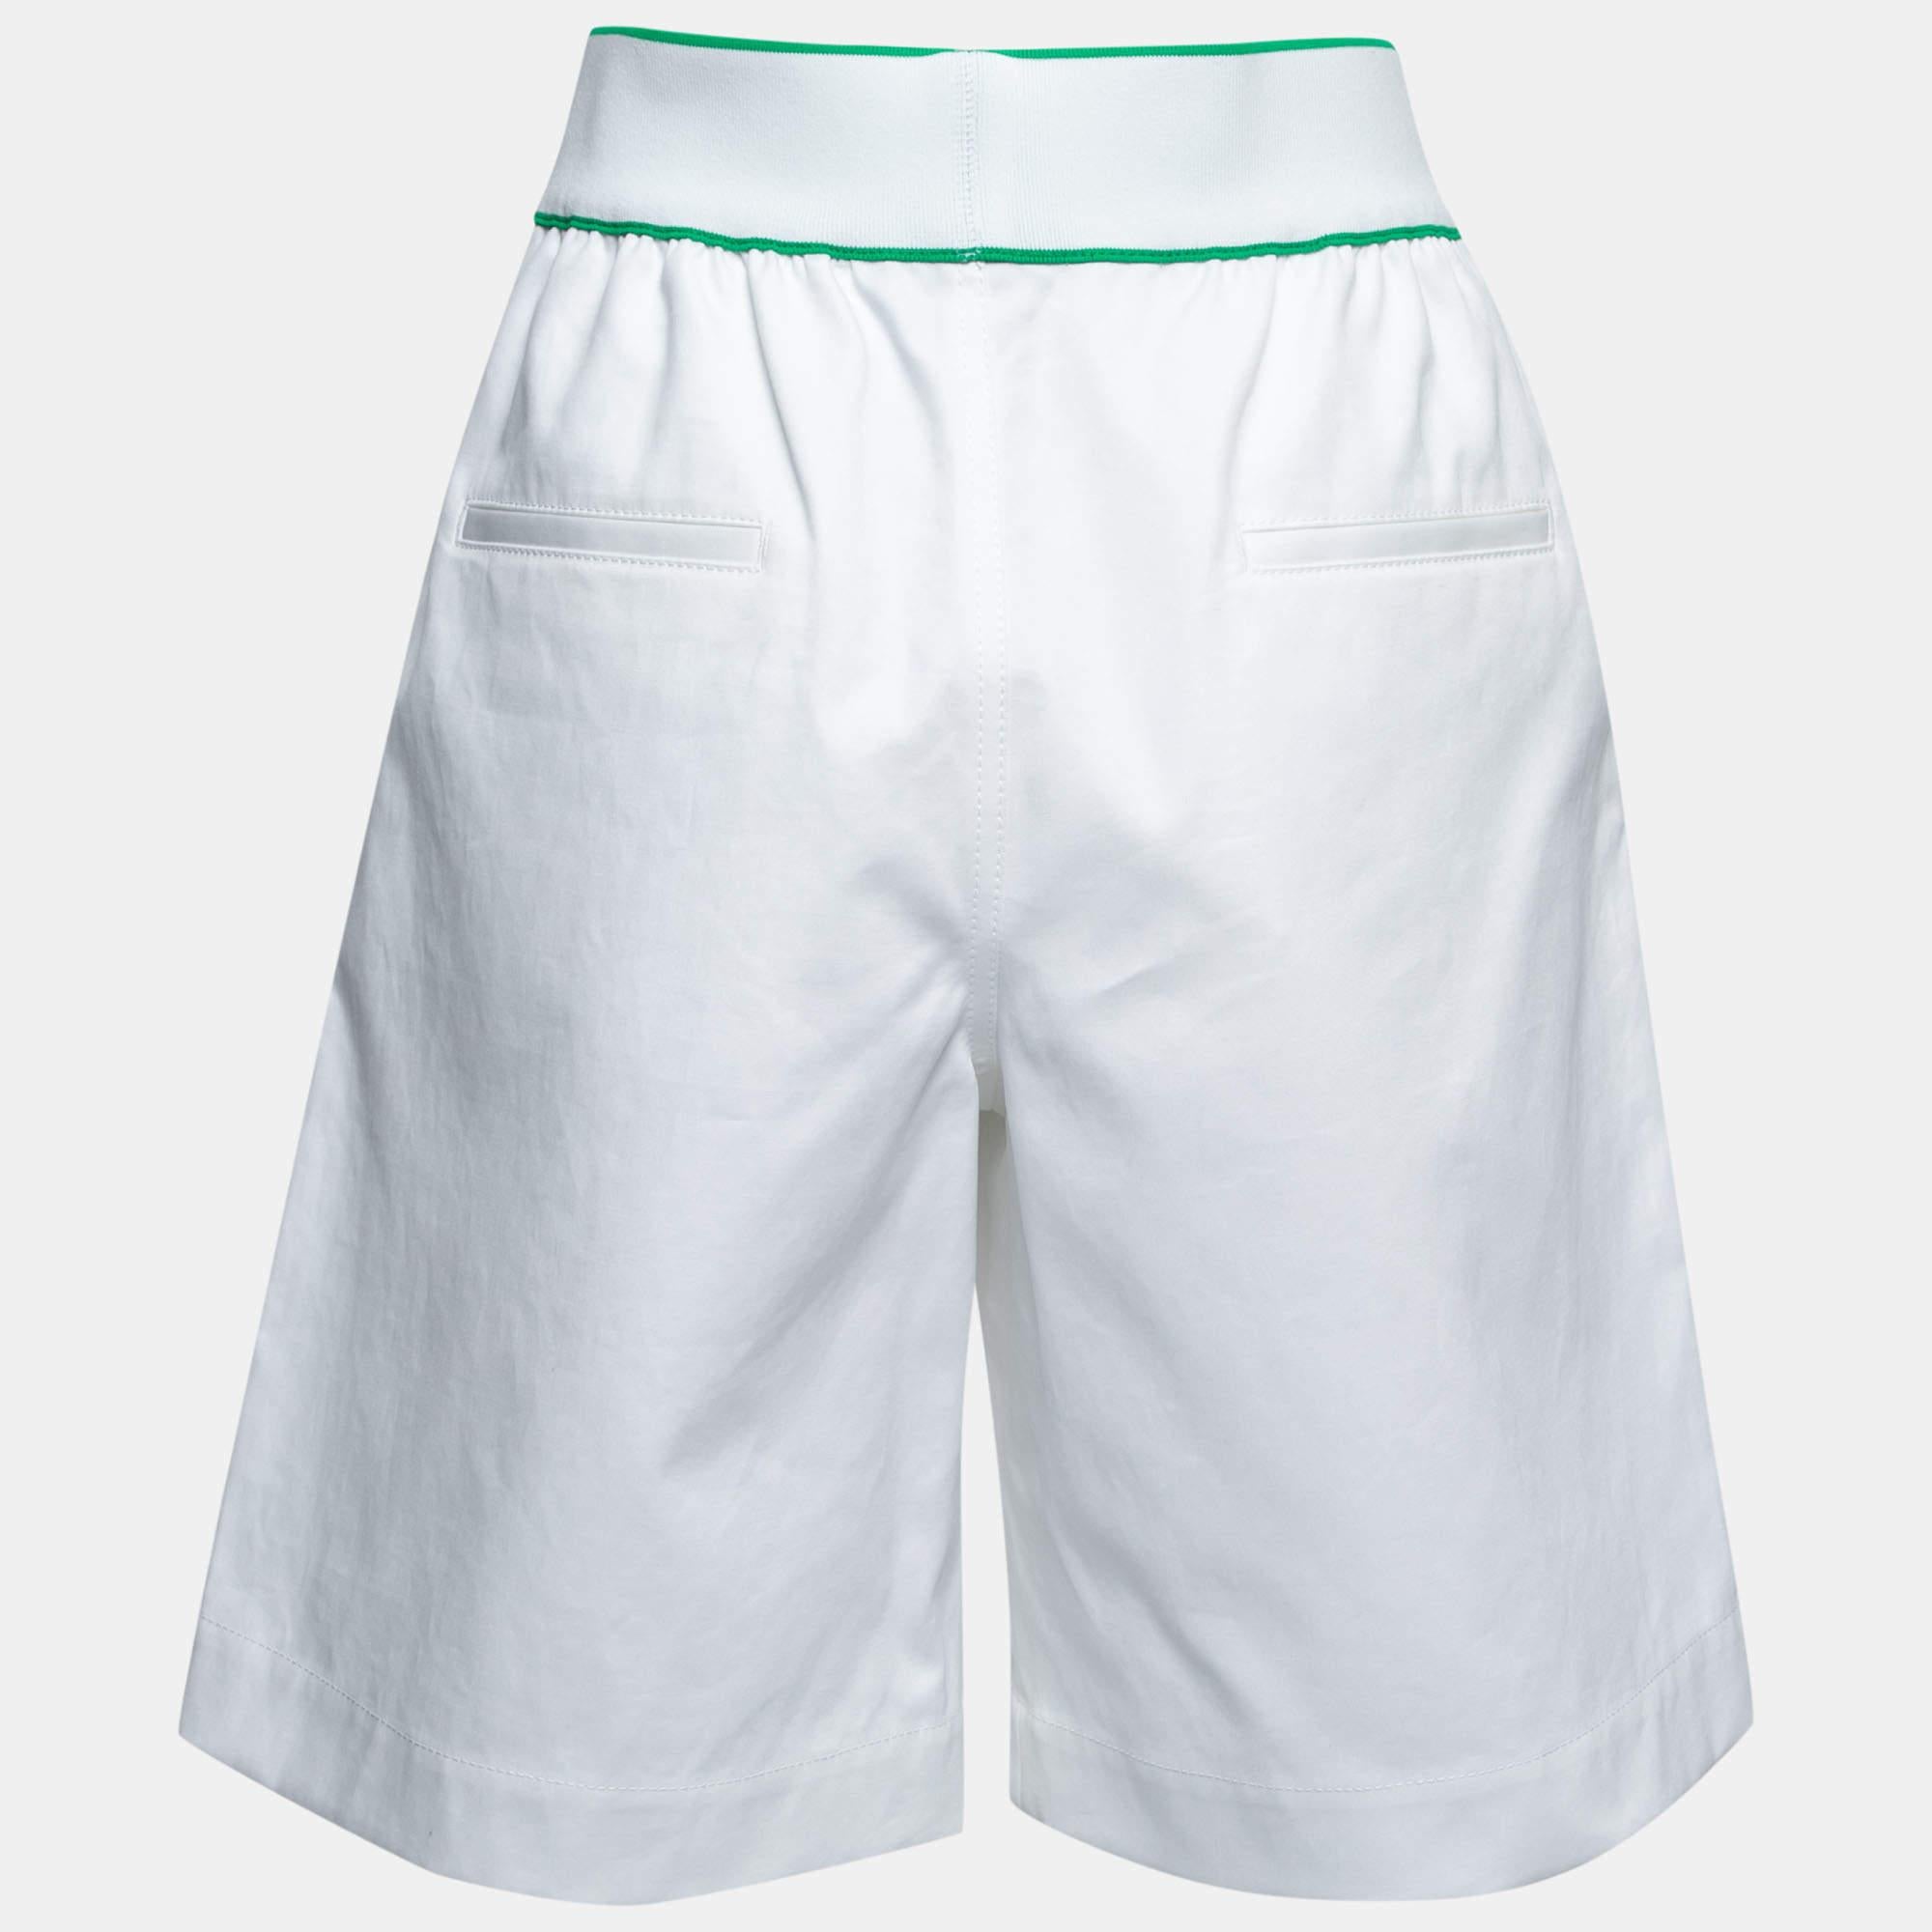 Diese Shorts sind eine bequeme und stilvolle Wahl für Ihren Urlaub. Einfach zu stylen und stilvoll im Aussehen, werden diese Shorts Ihr Favorit sein!

Enthält: Markenanhänger
